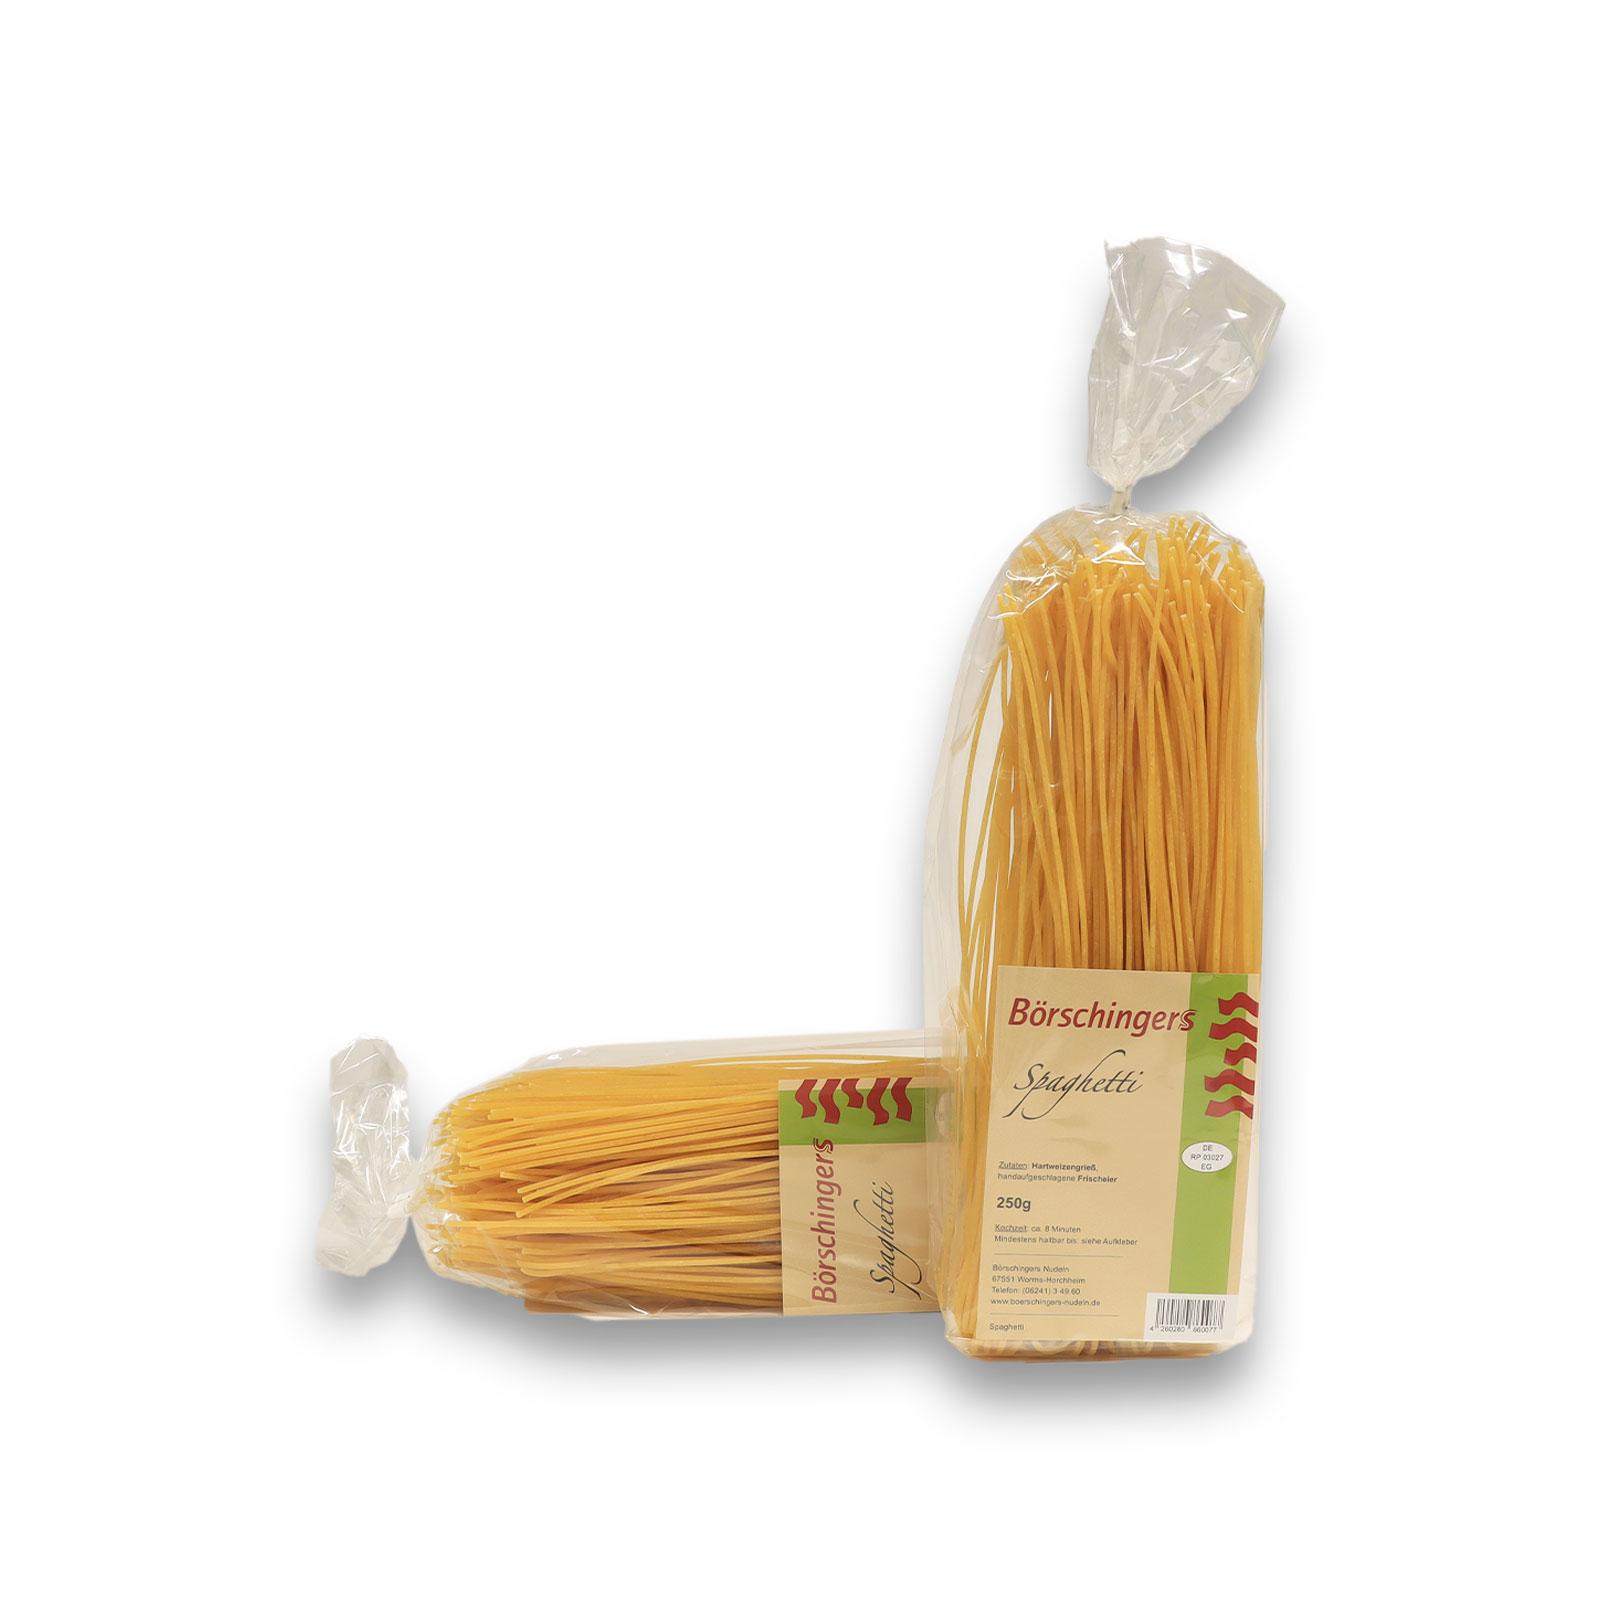 Zusammenstellung von Spaghetti von Börschingers Nudel aus Worms.